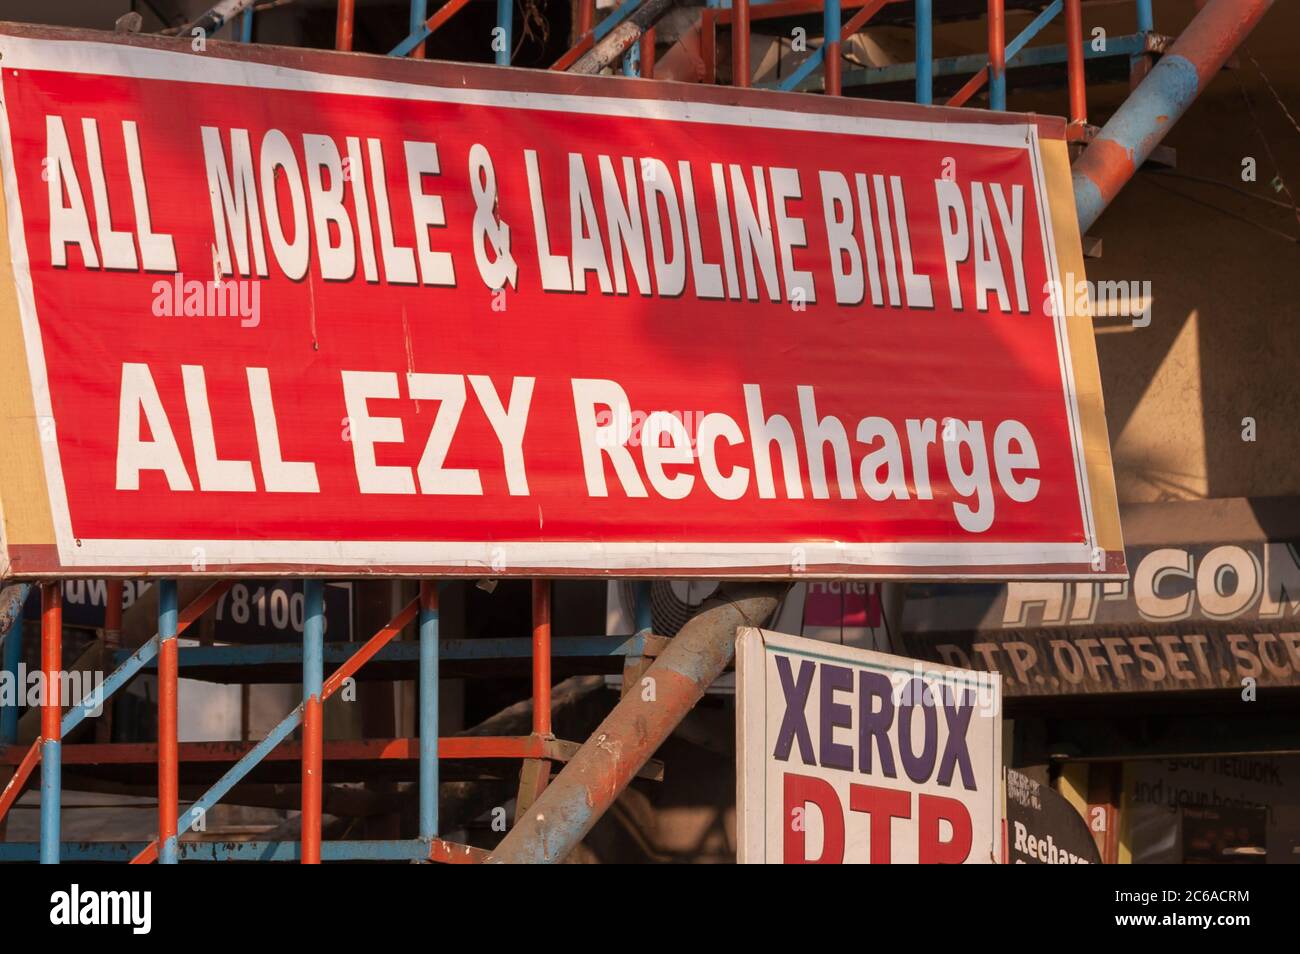 Un panneau/palissade à l'extérieur d'un établissement d'affaires en Inde offrant un dispositif de recharge de téléphone mobile. Le mot « recharger » est mal orthographié. Banque D'Images